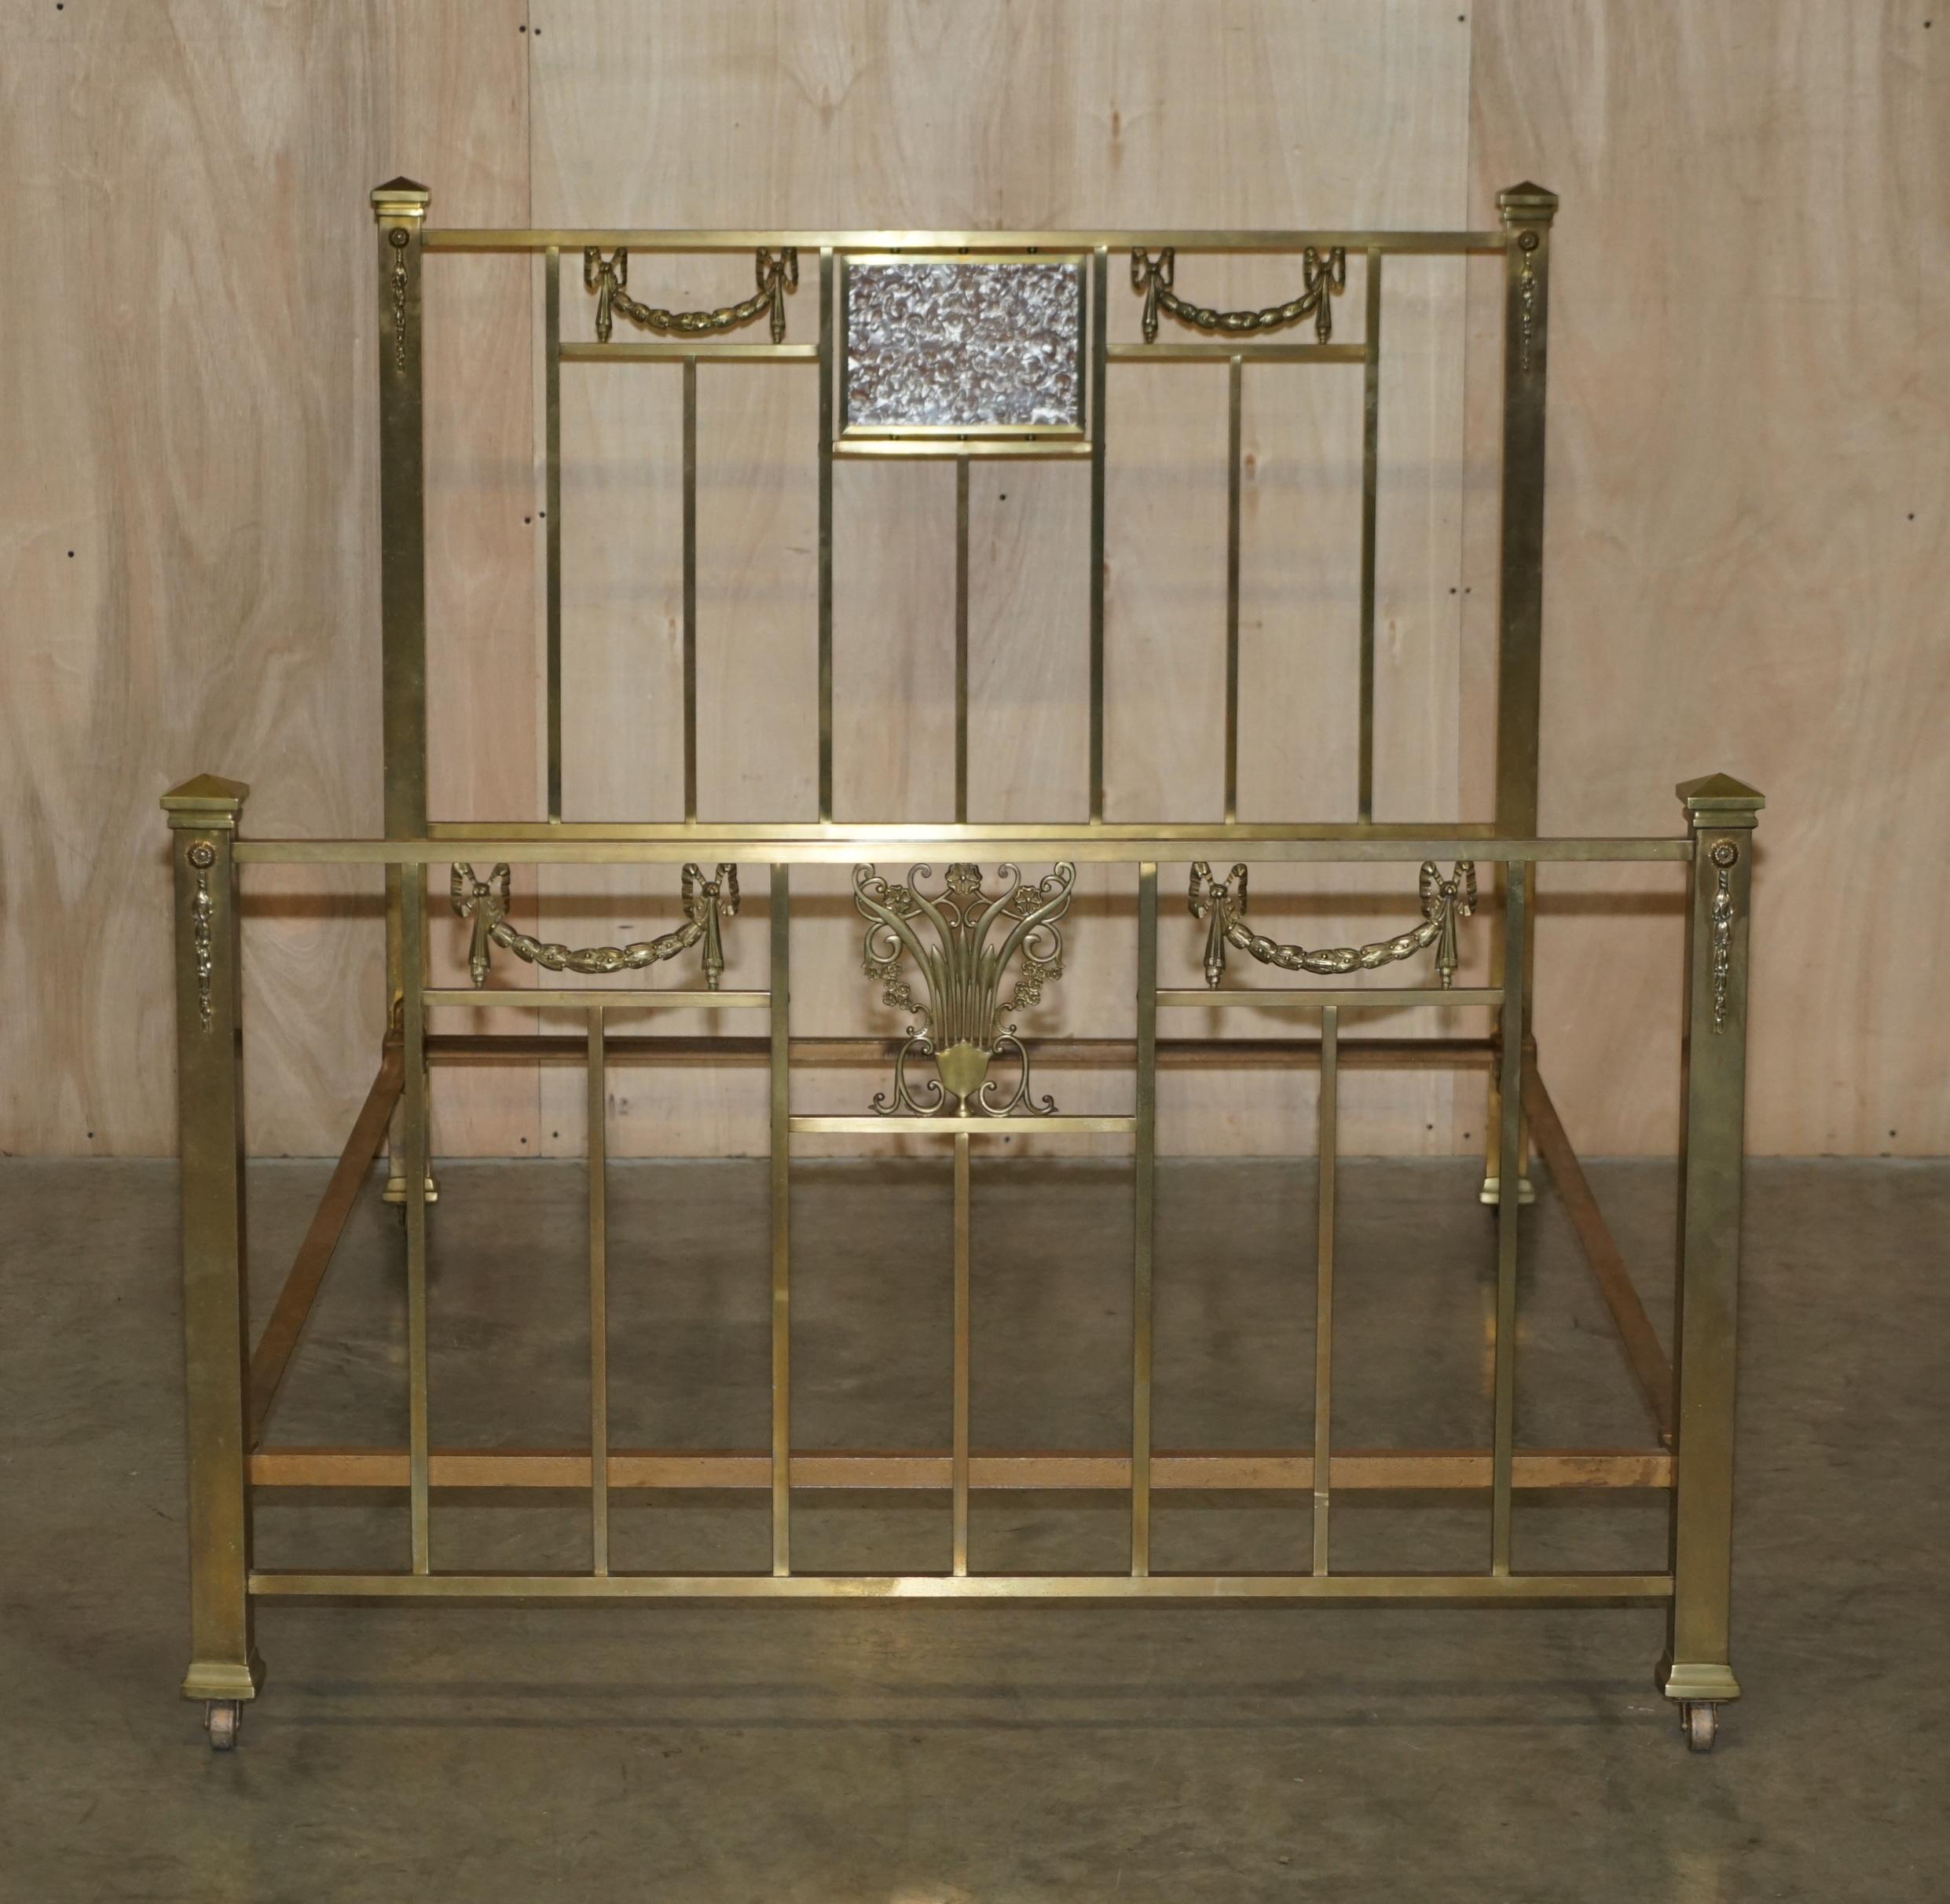 Wir freuen uns, dieses sehr seltene Original circa 1880 viktorianischen Messing Doppelbett Rahmen mit Perlmutt-Stil einfügen Panel zum Verkauf anbieten 

Diese Betten sind so selten und sammelwürdig wie nur möglich. Der Rahmen ist komplett